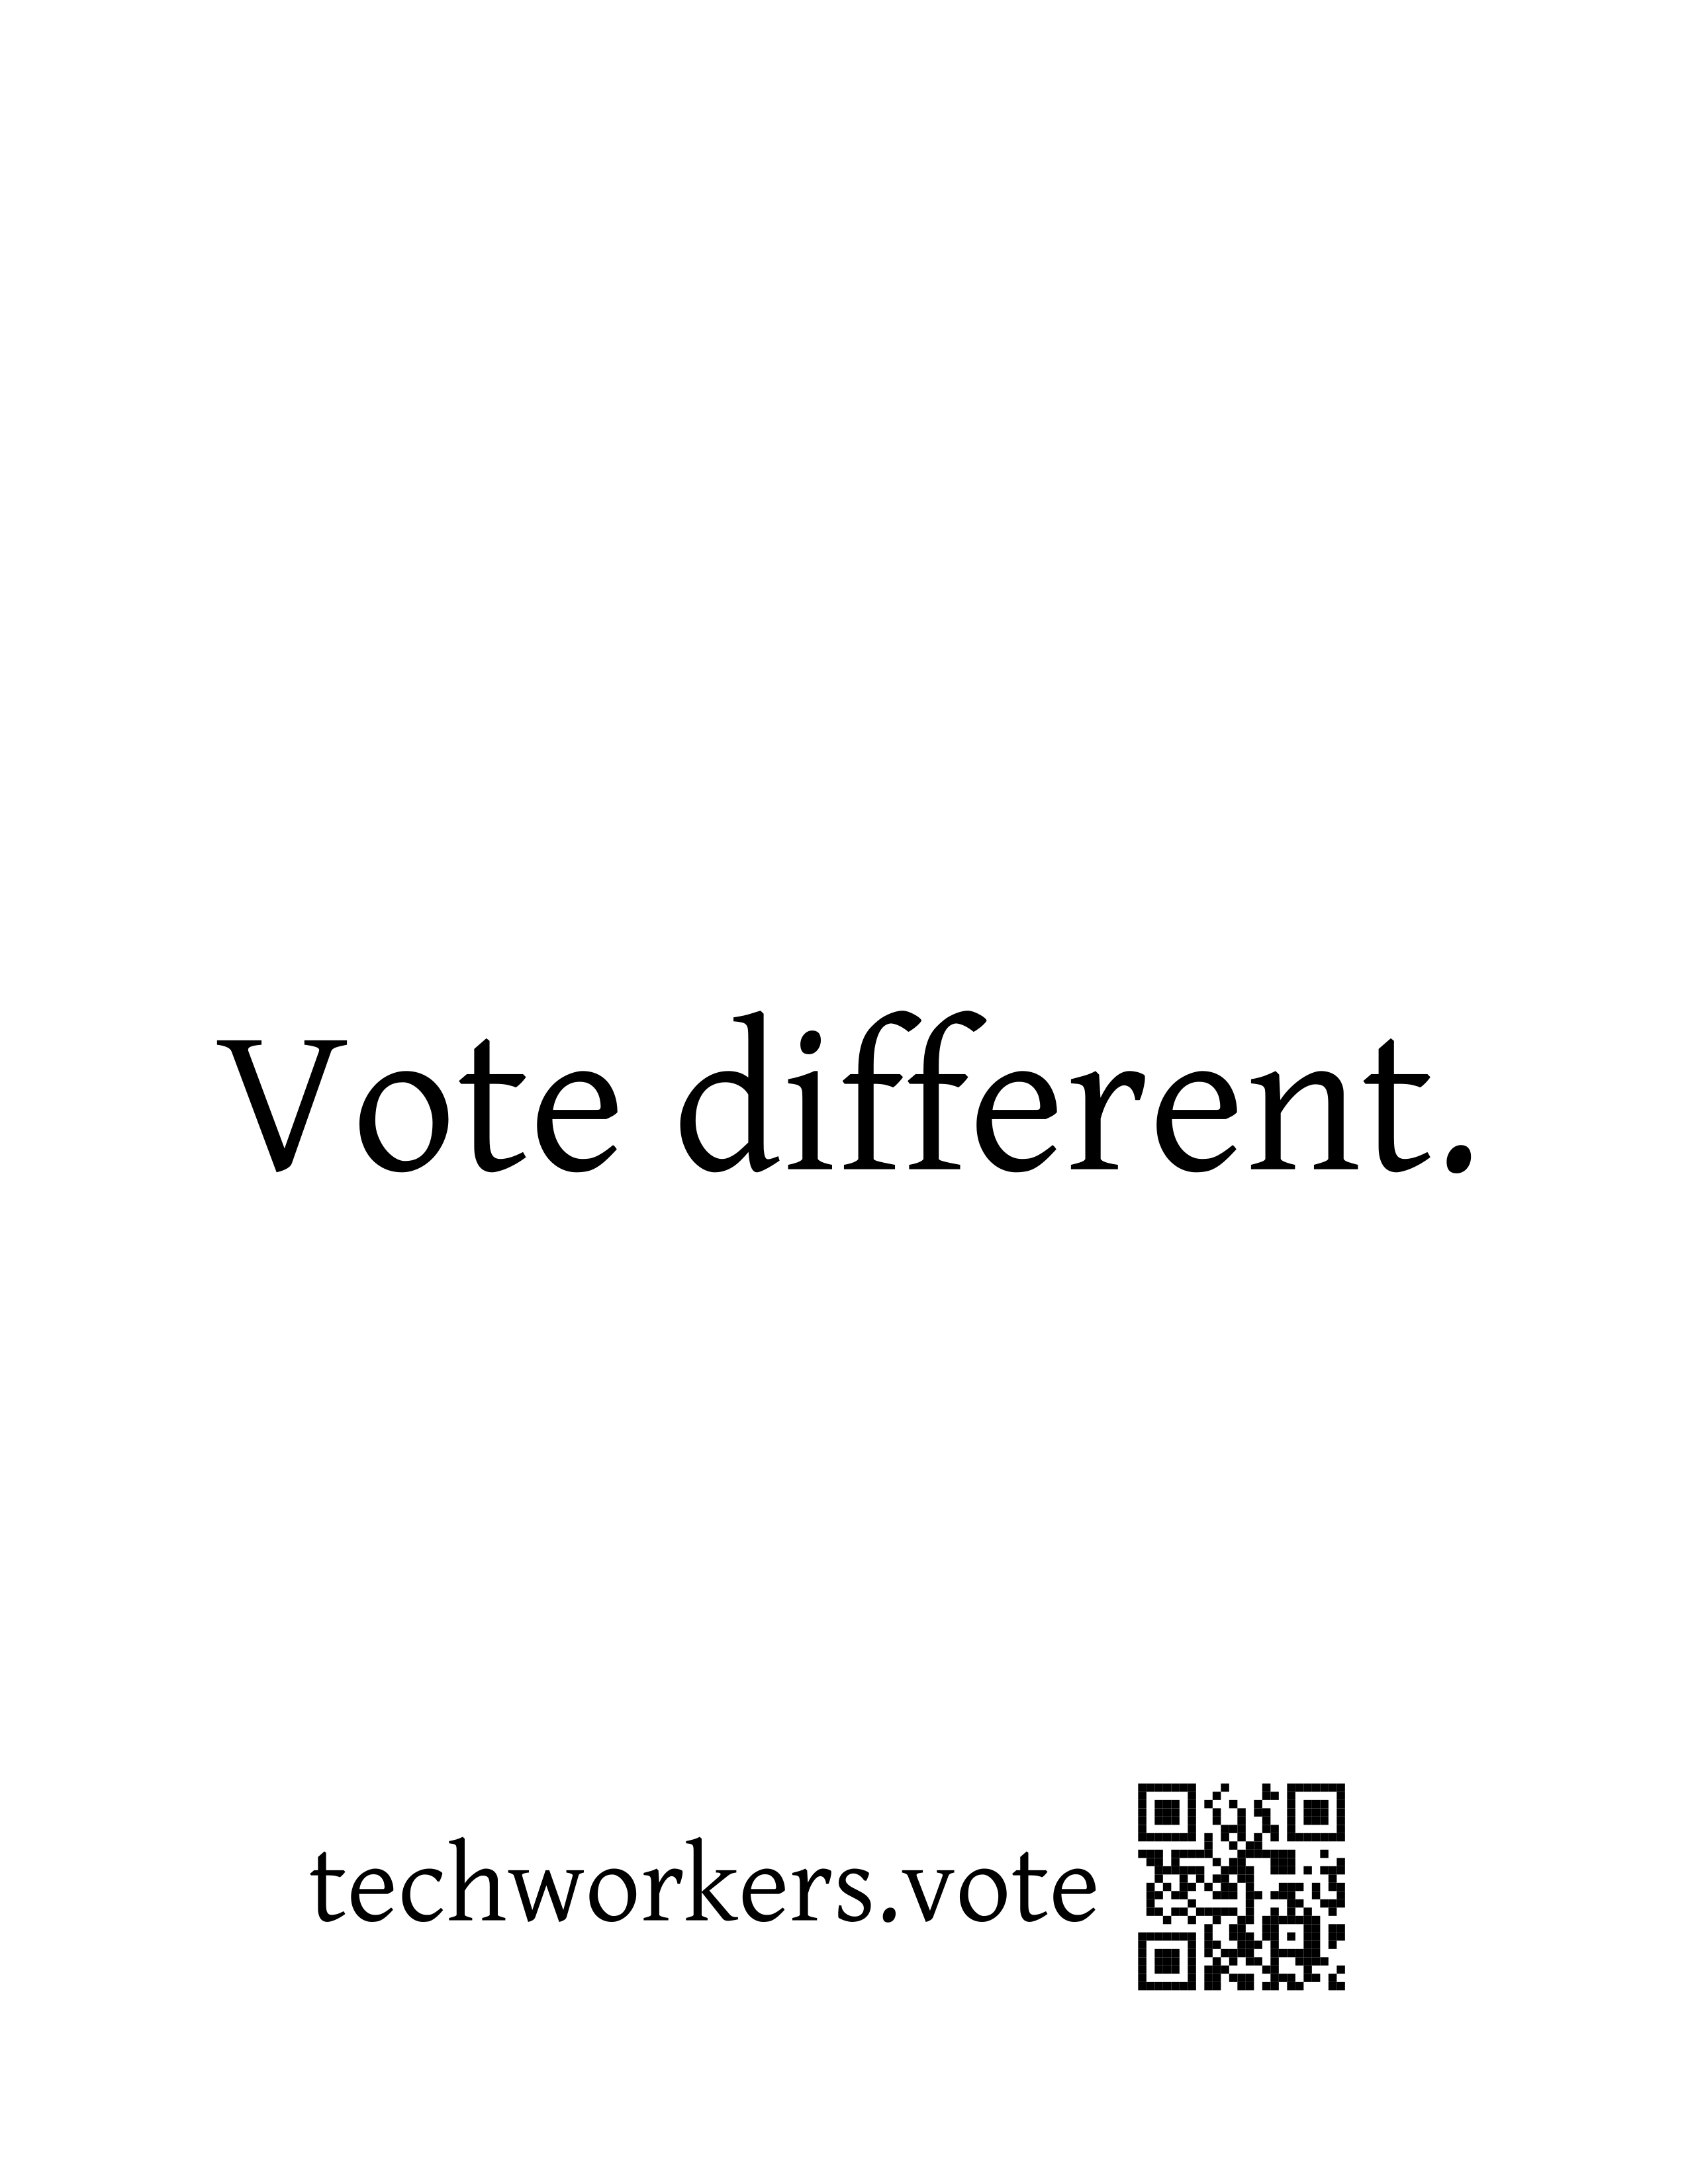 Vote different.